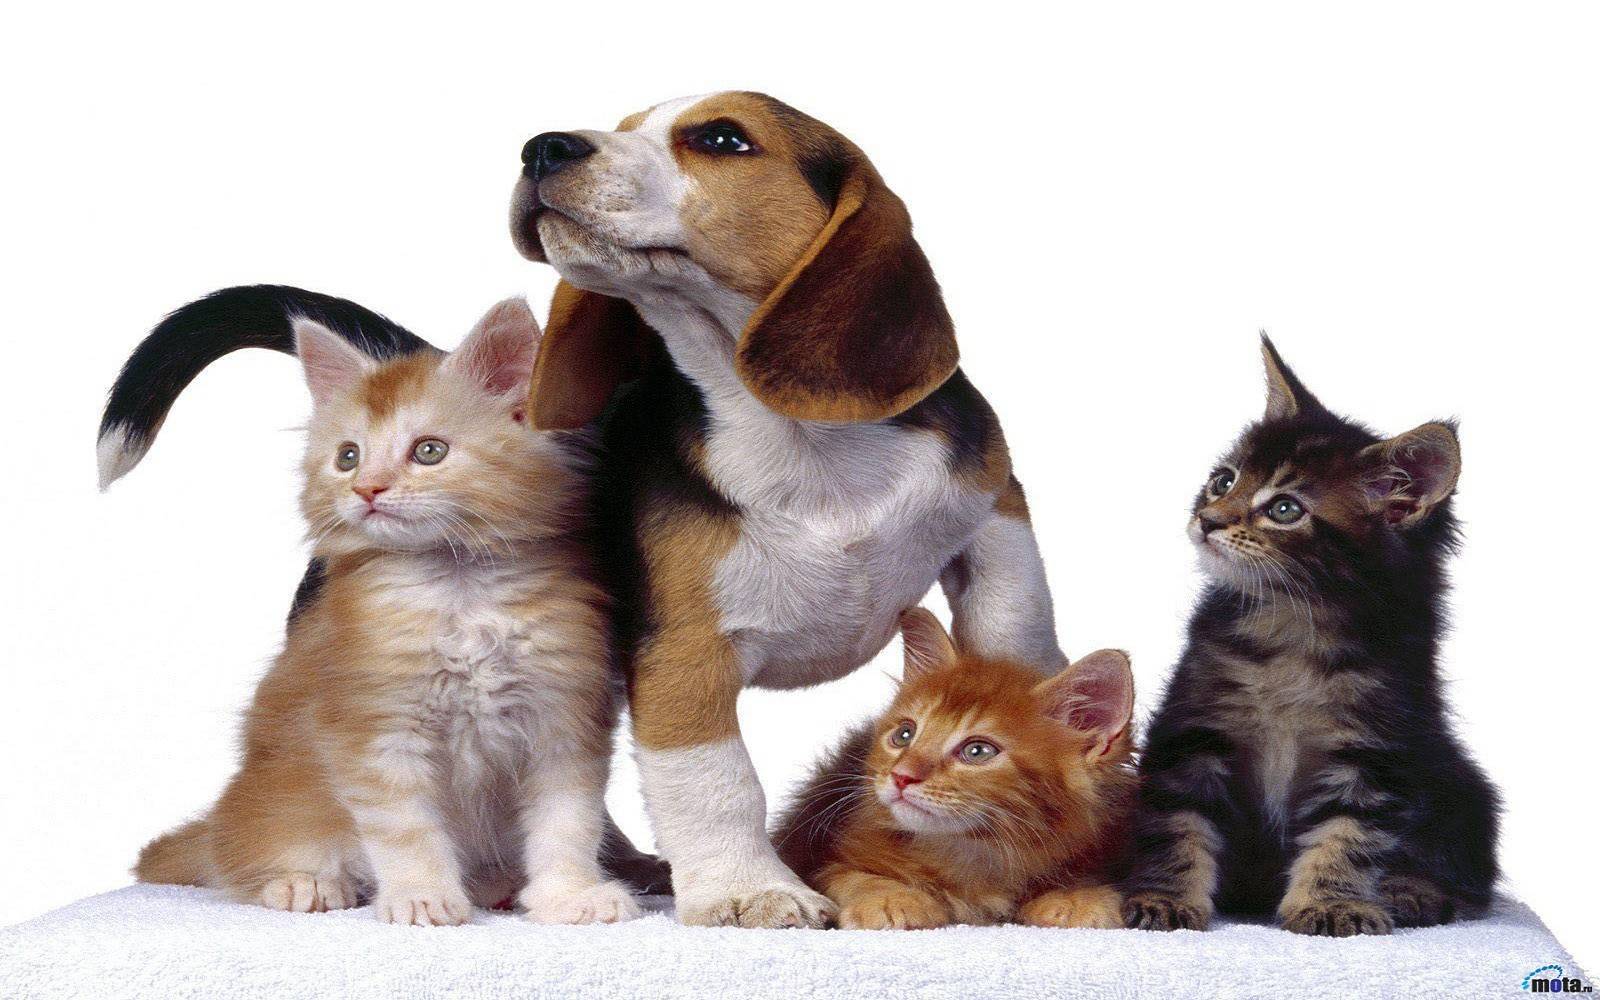 Как подружить кошку с кошкой и с другими животными в доме? :: syl.ru